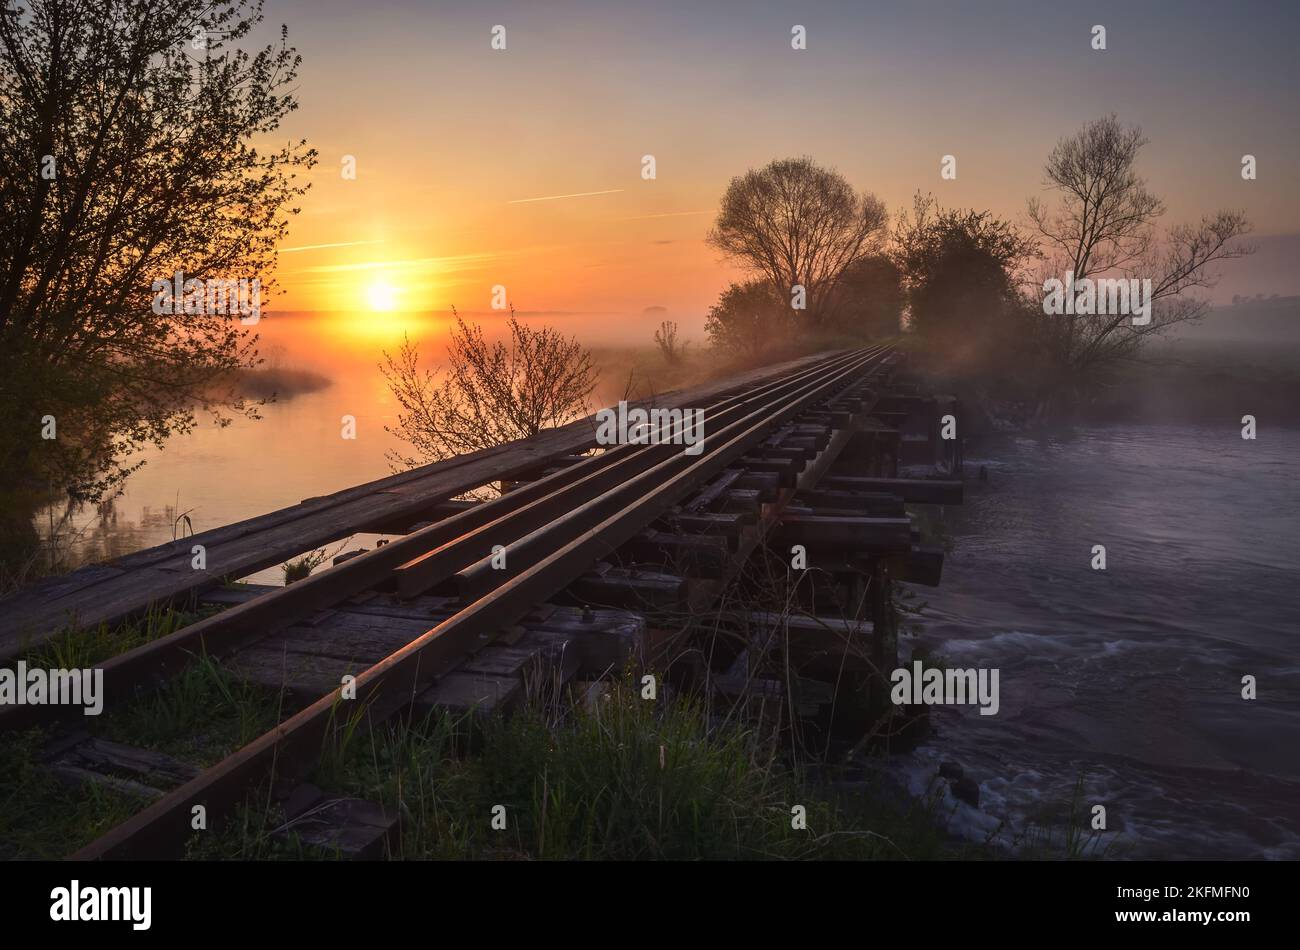 Schöner Sommermorgen. Brücke mit Schienen bei einem schönen Sonnenaufgang. Foto aufgenommen in Motkowice, Polen. Stockfoto